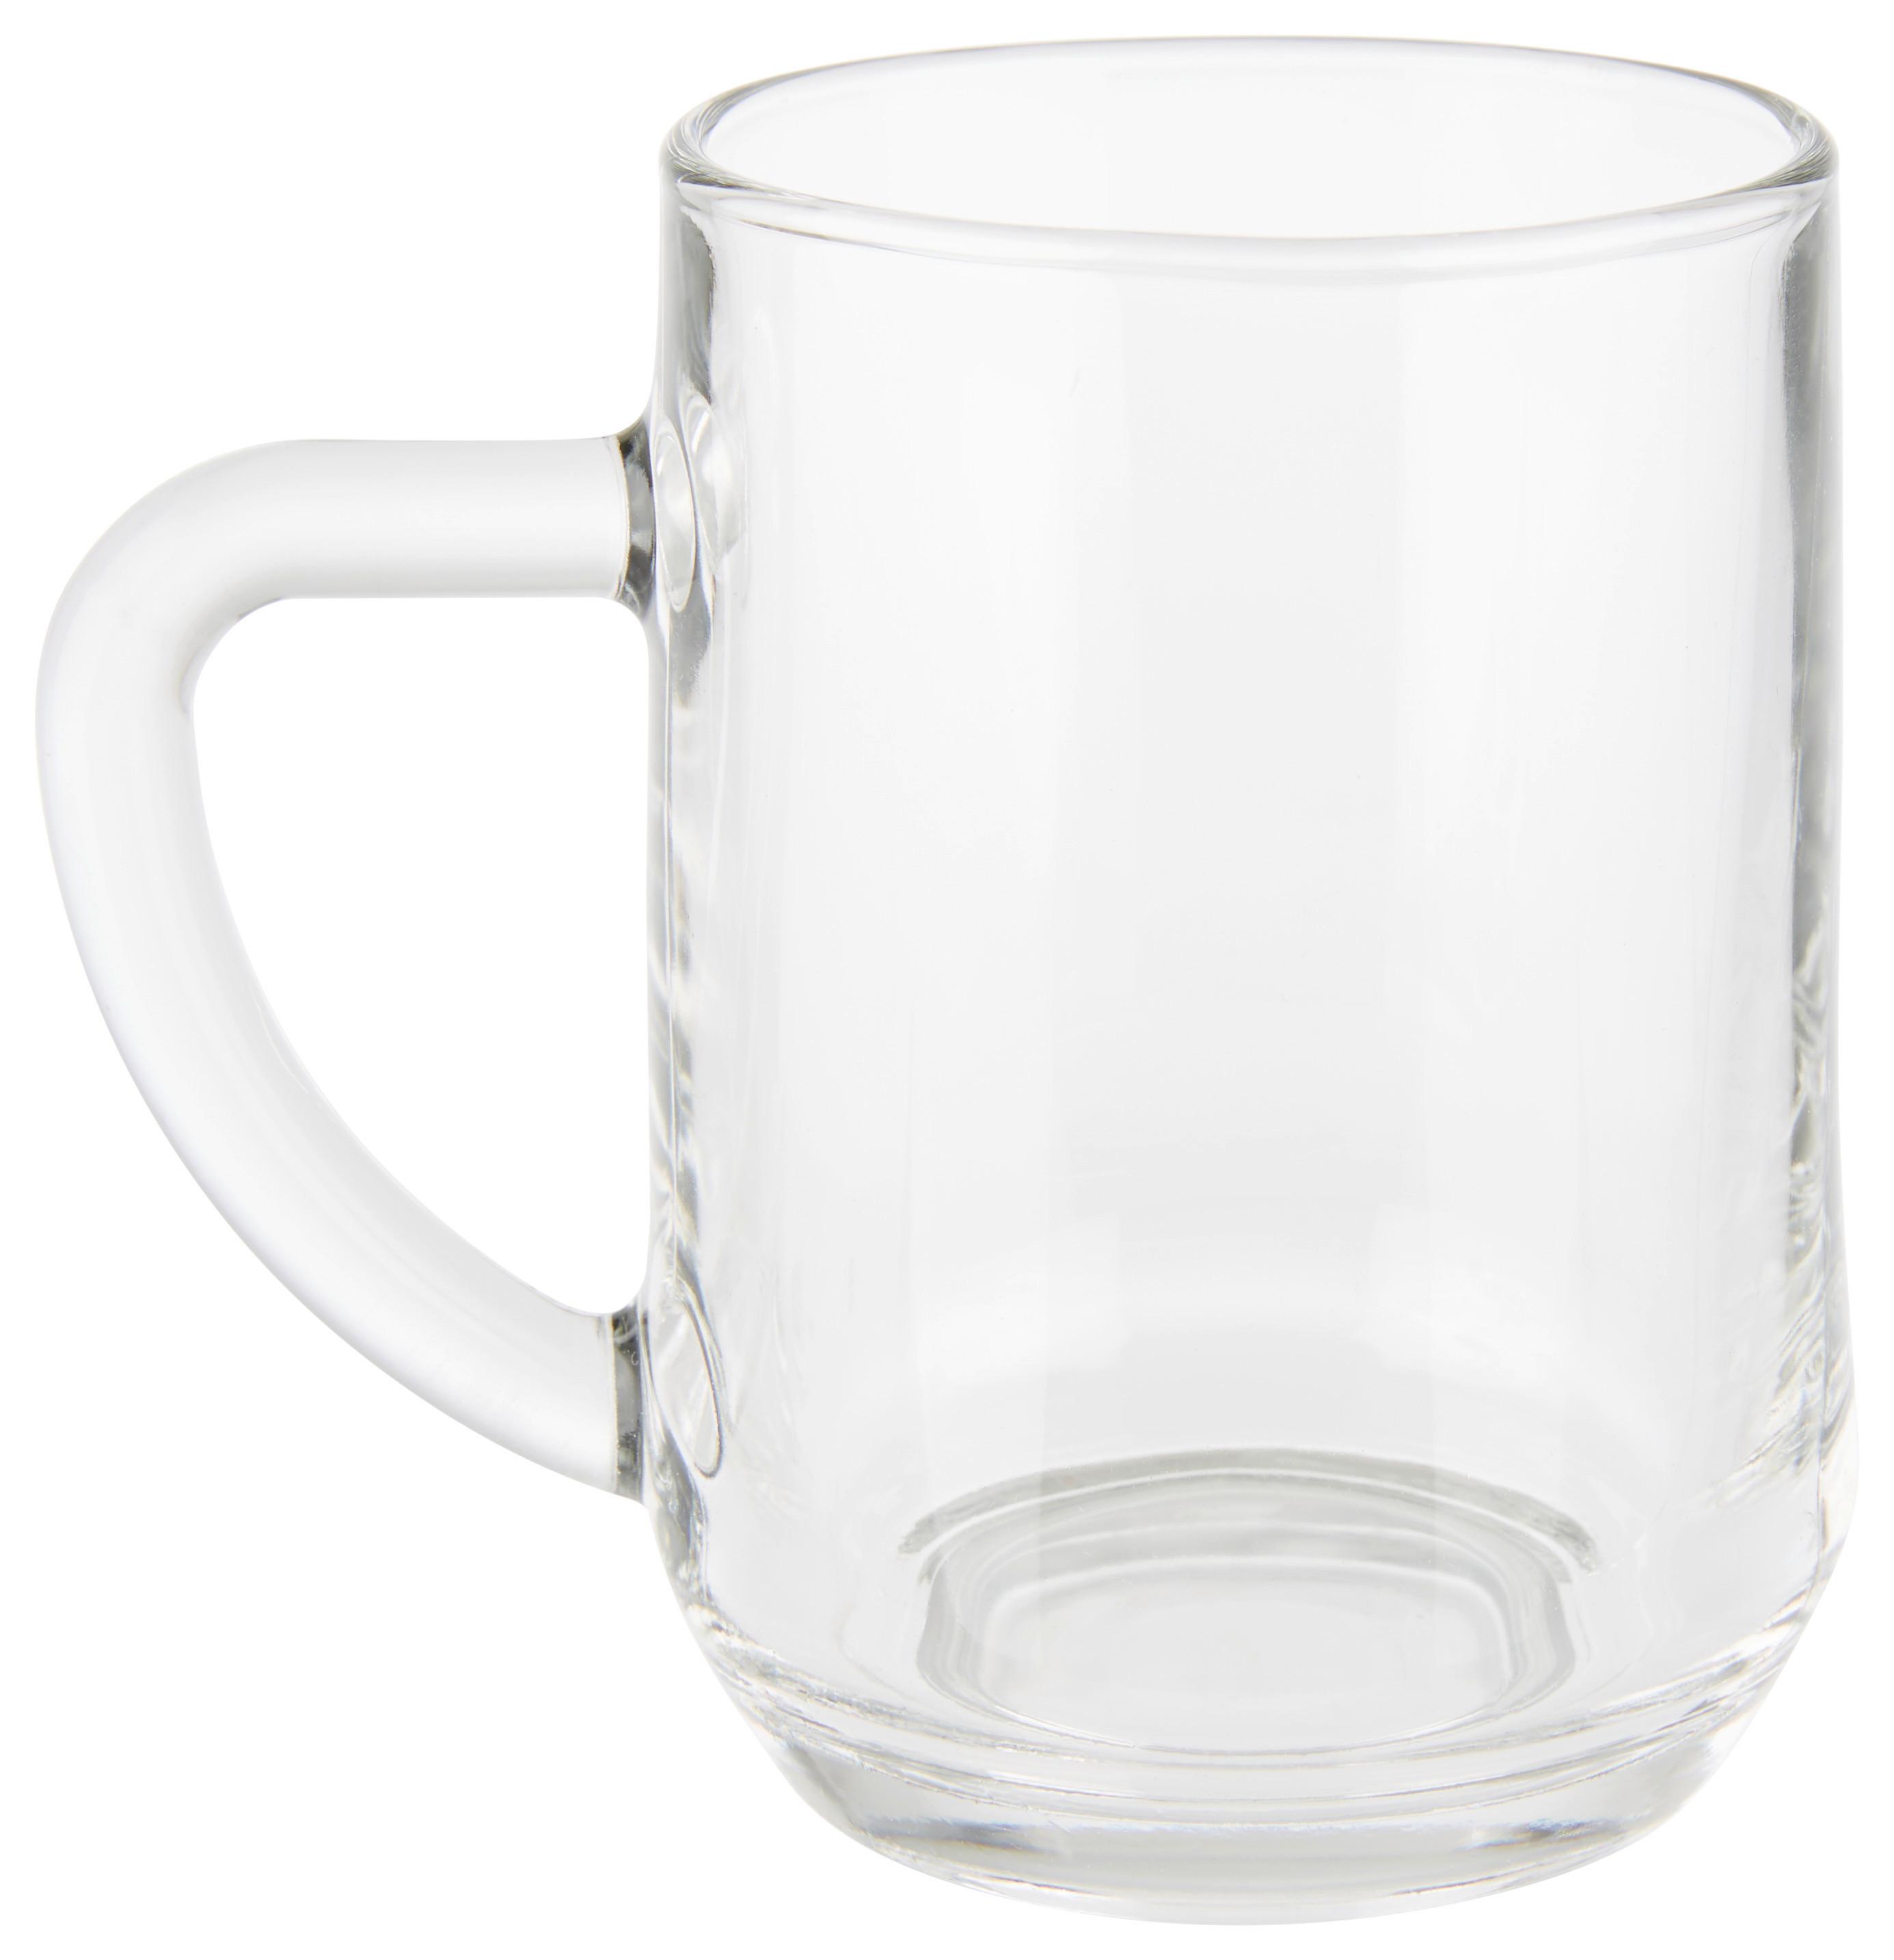 Trinkglas Sparkle mit Henkel ca. 300ml - Klar, Glas (7,2/10,6cm) - Modern Living